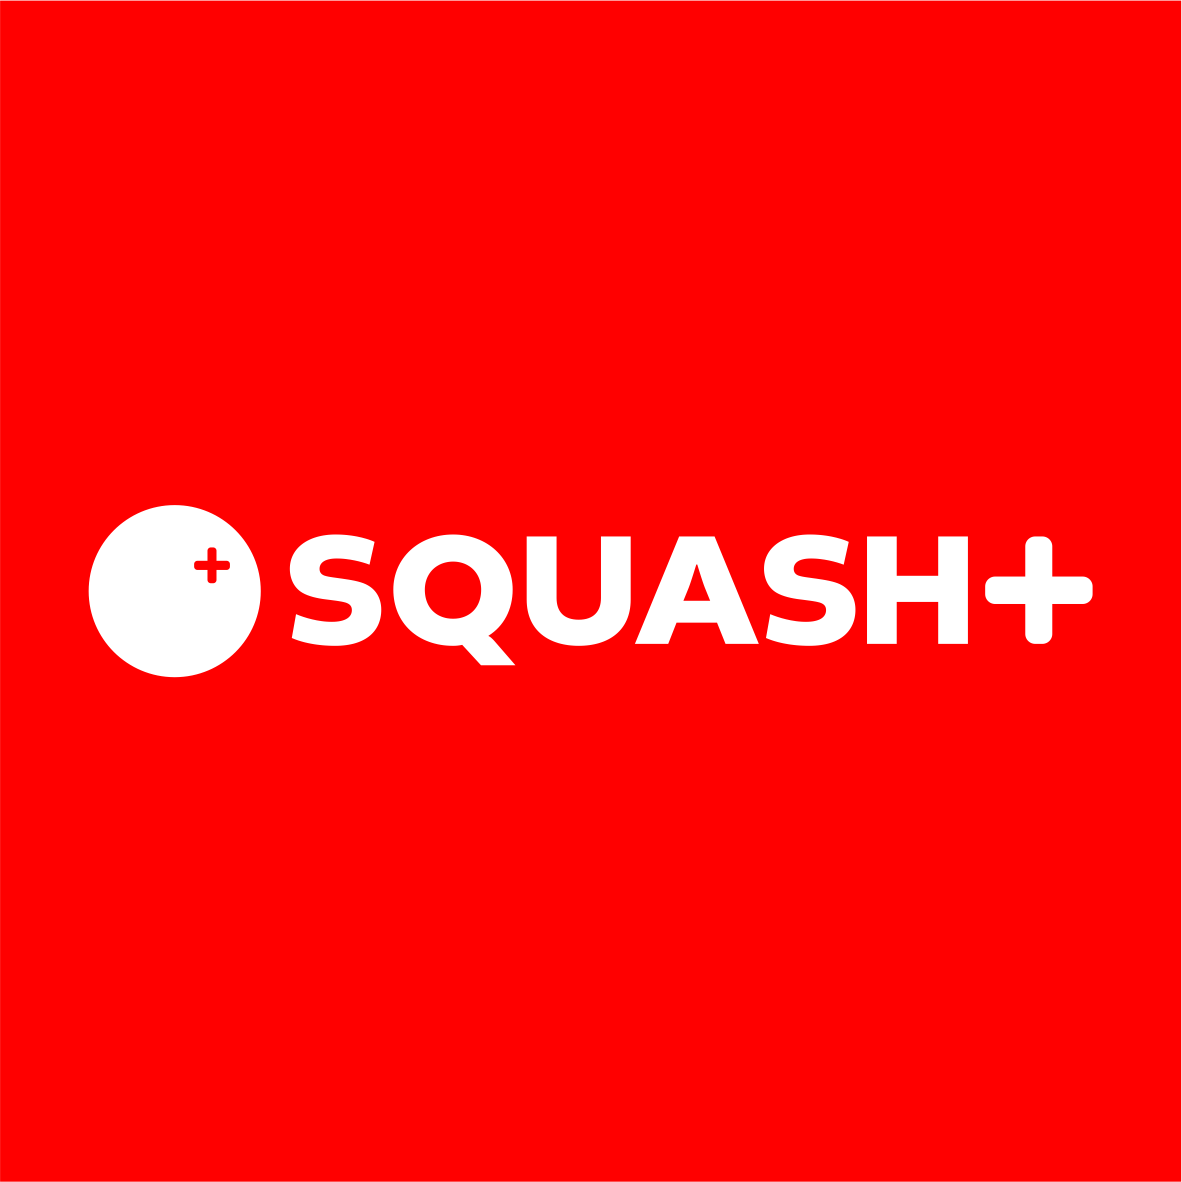 Squash+